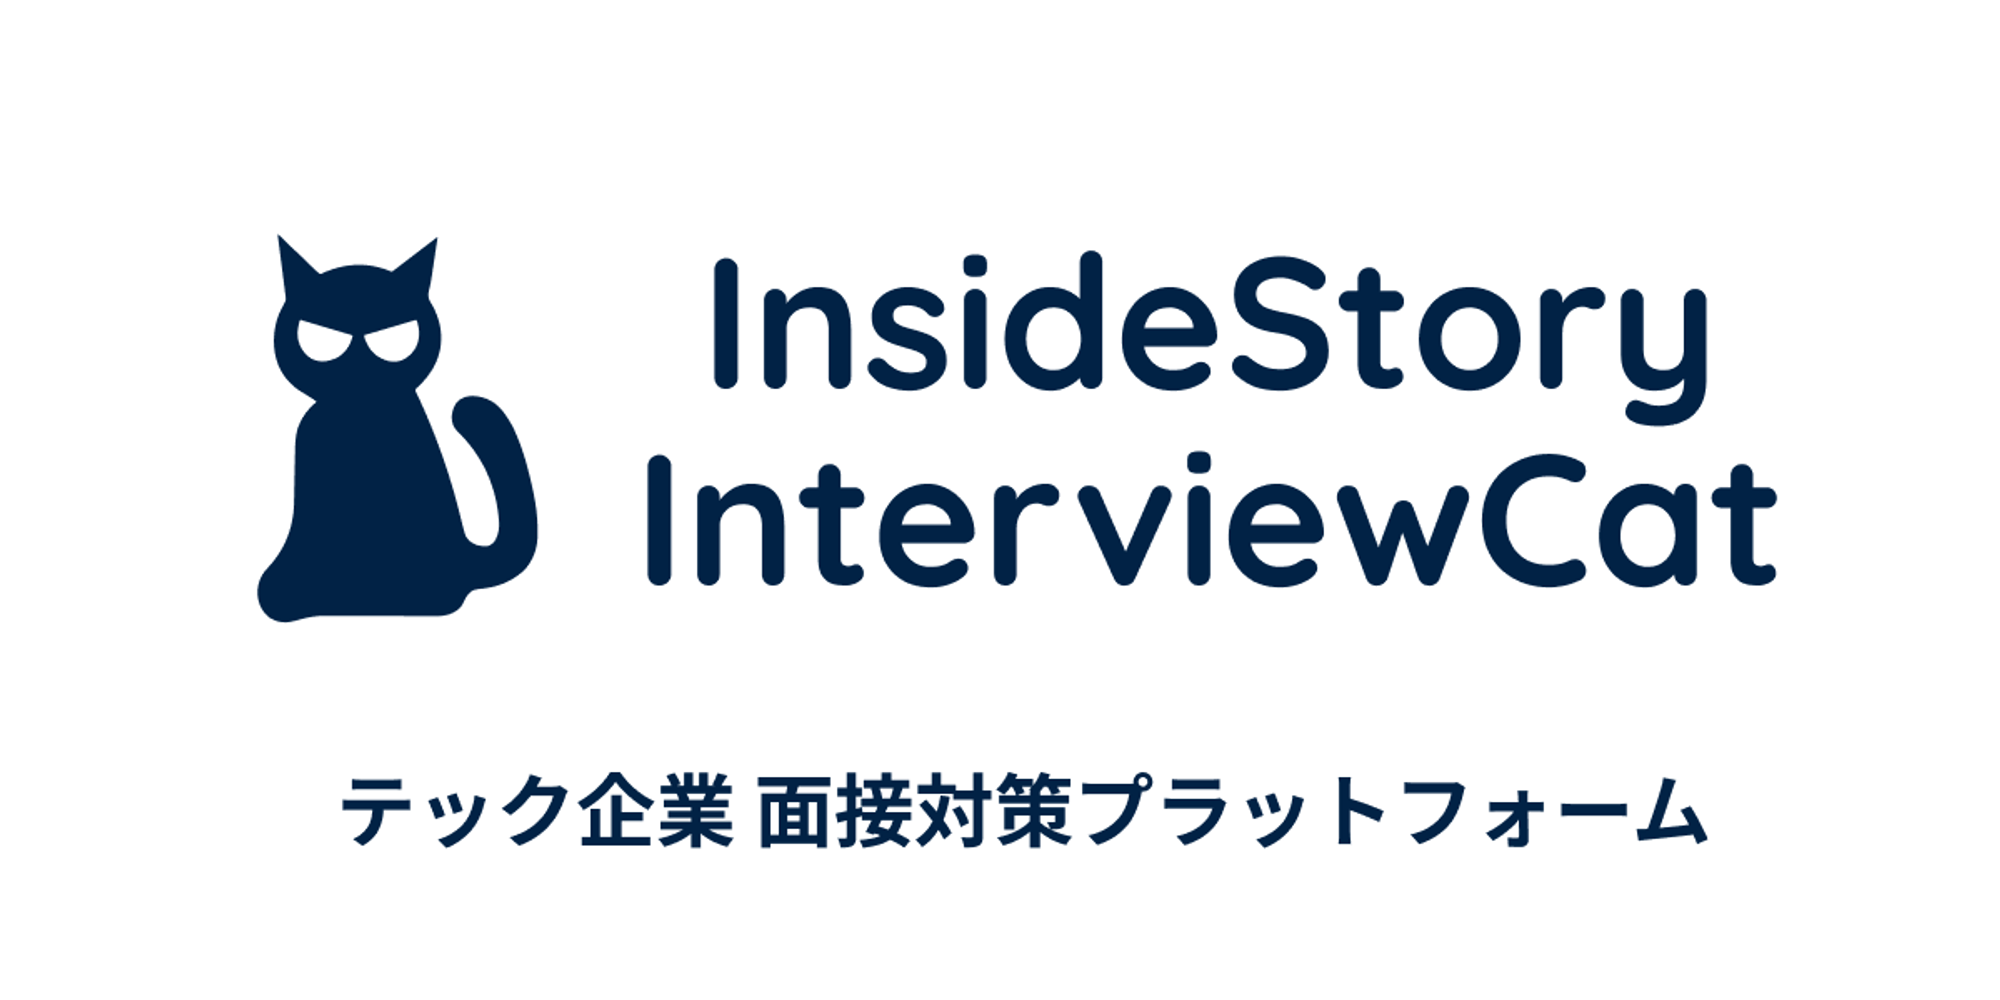 InsideStory InterviewCat | エンジニアストーリー